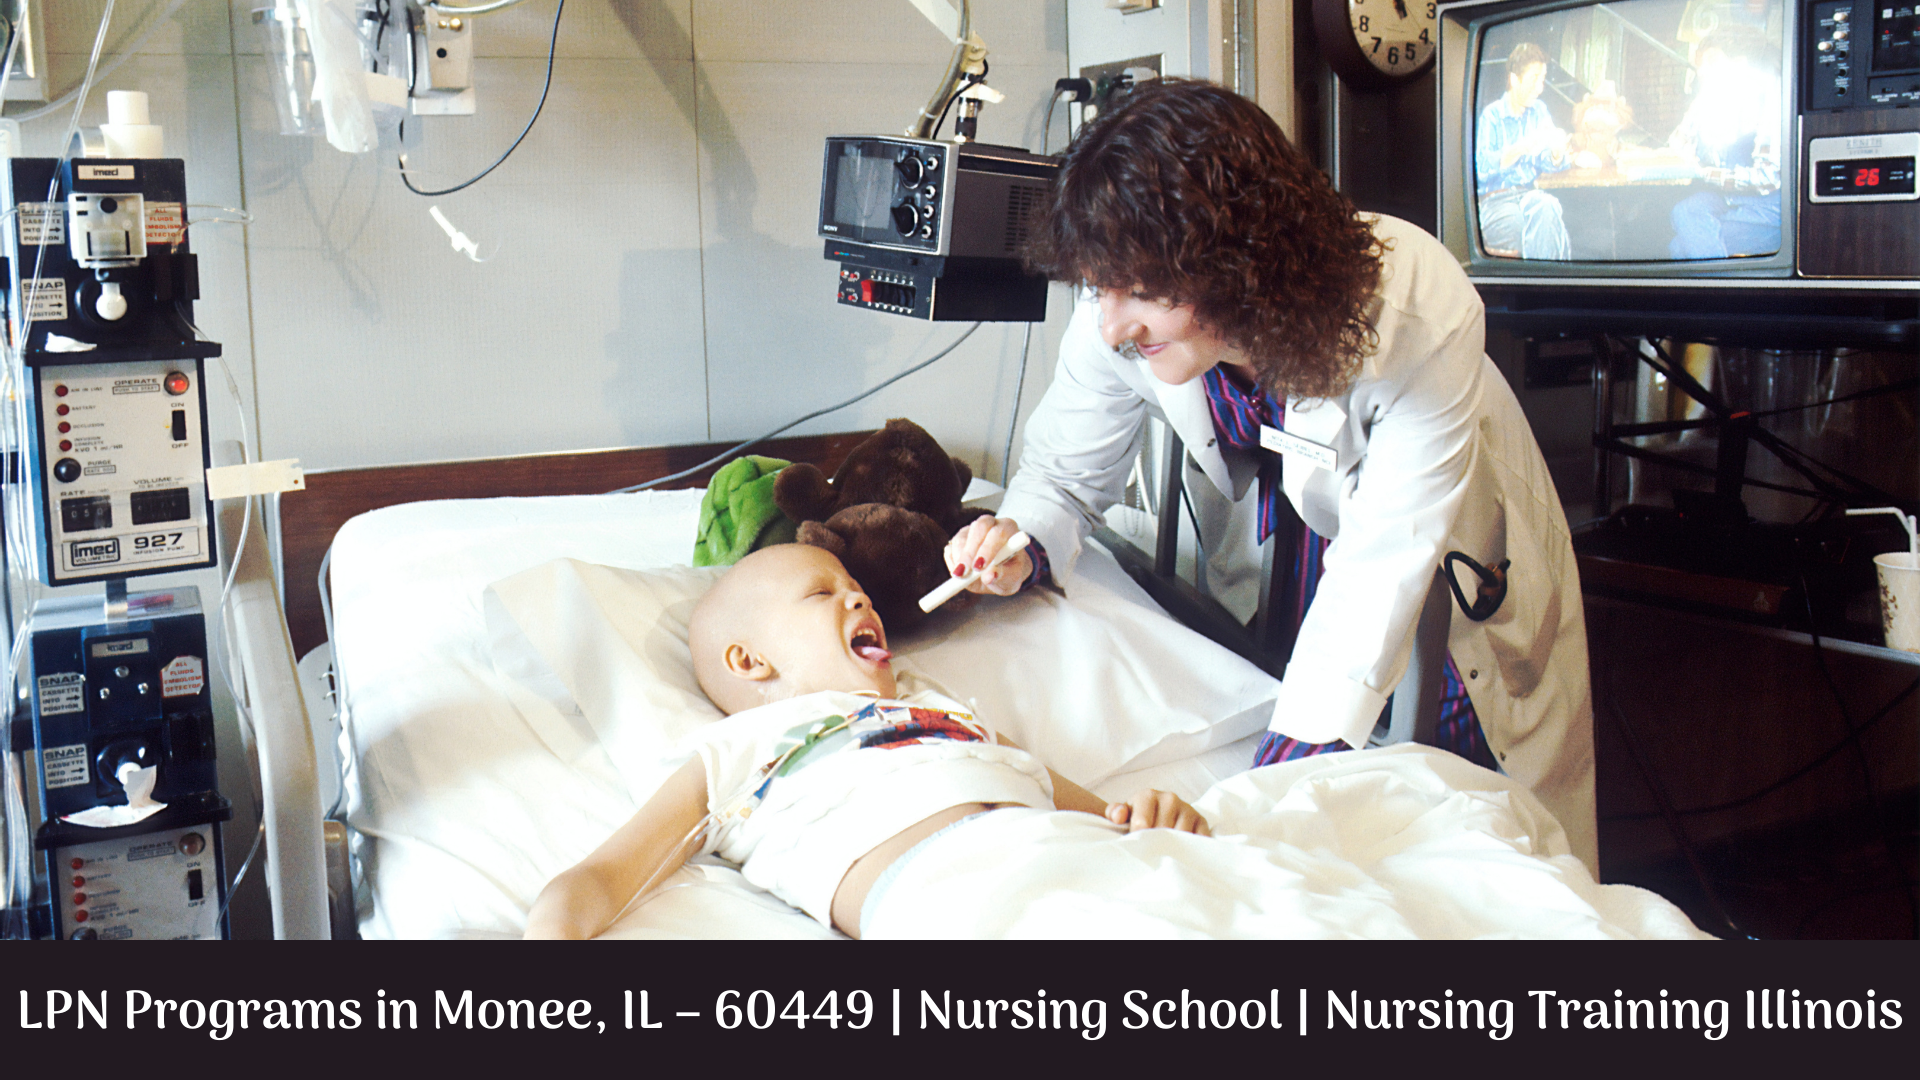 LPN Programs in Monee, IL – 60449 | Nursing School | Nursing Training Illinois